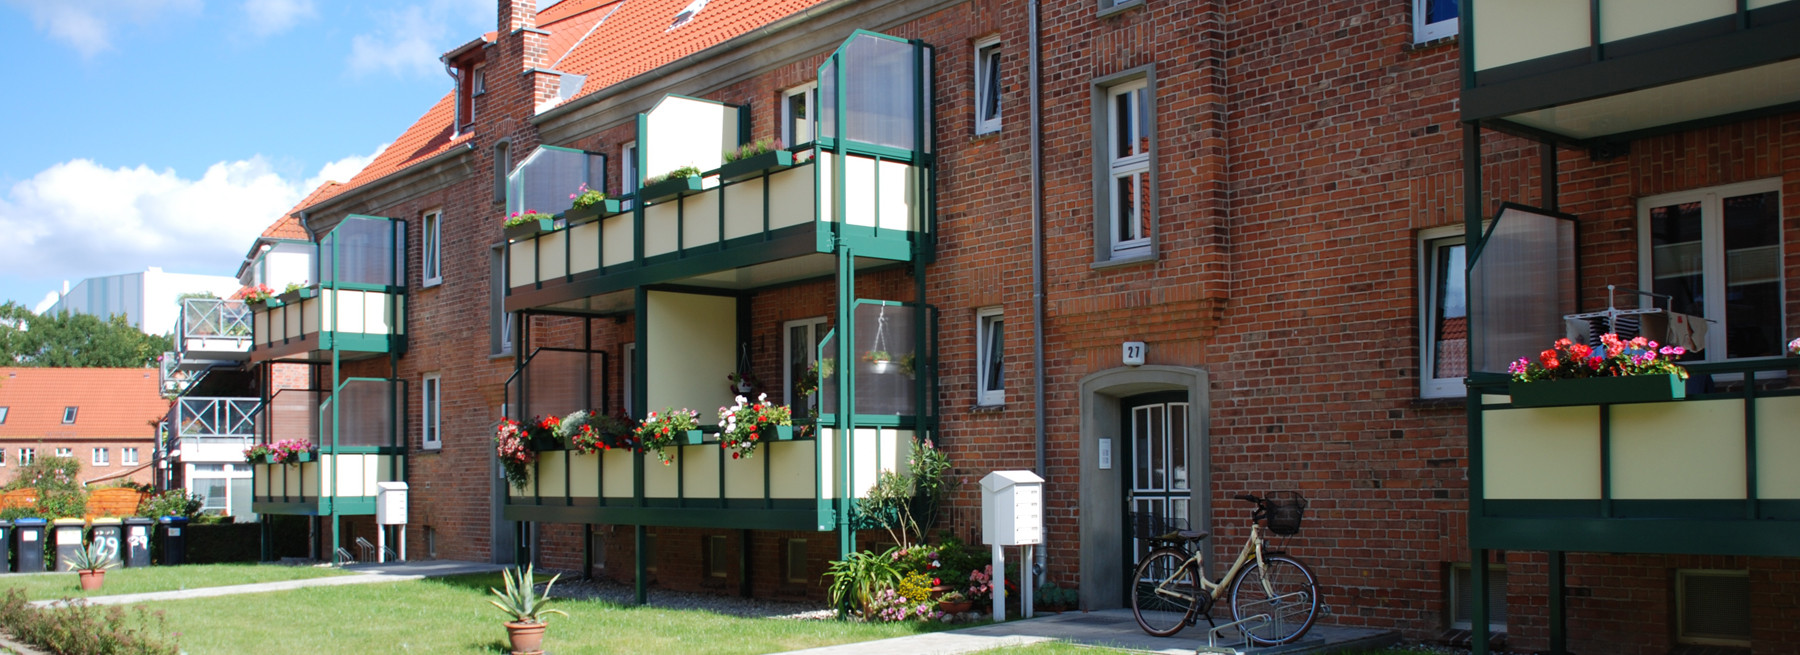 Wohnungen Wismar
 Aktuelle Wohnungsangebote